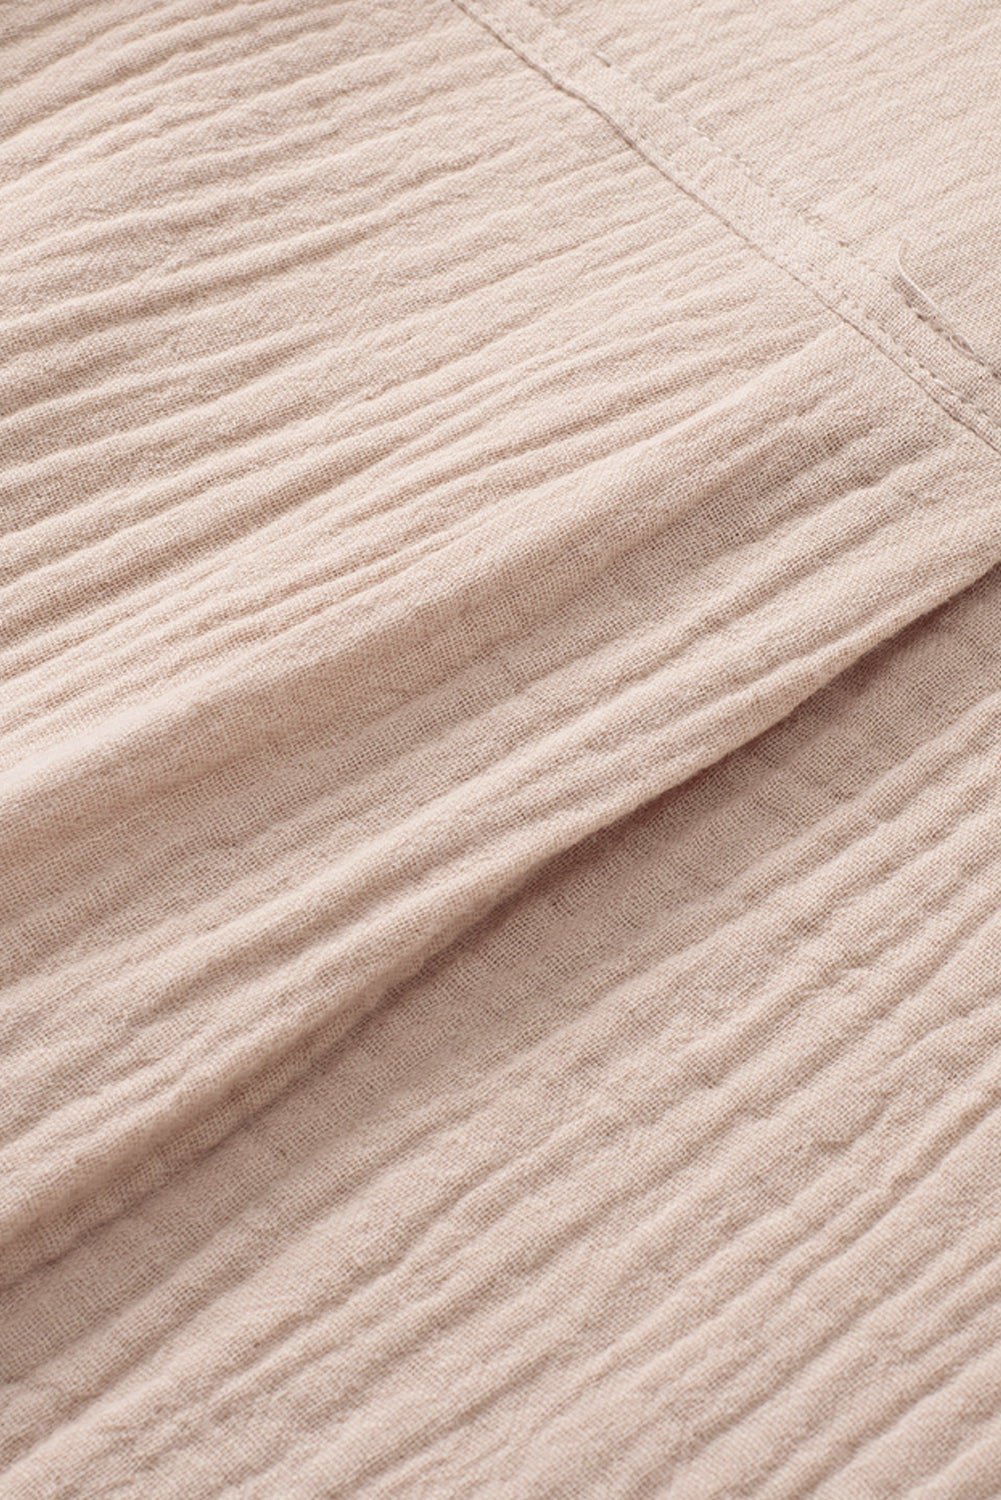 Khakifarbenes Hemd mit geknöpftem Umlegekragen und Tasche in Knitteroptik